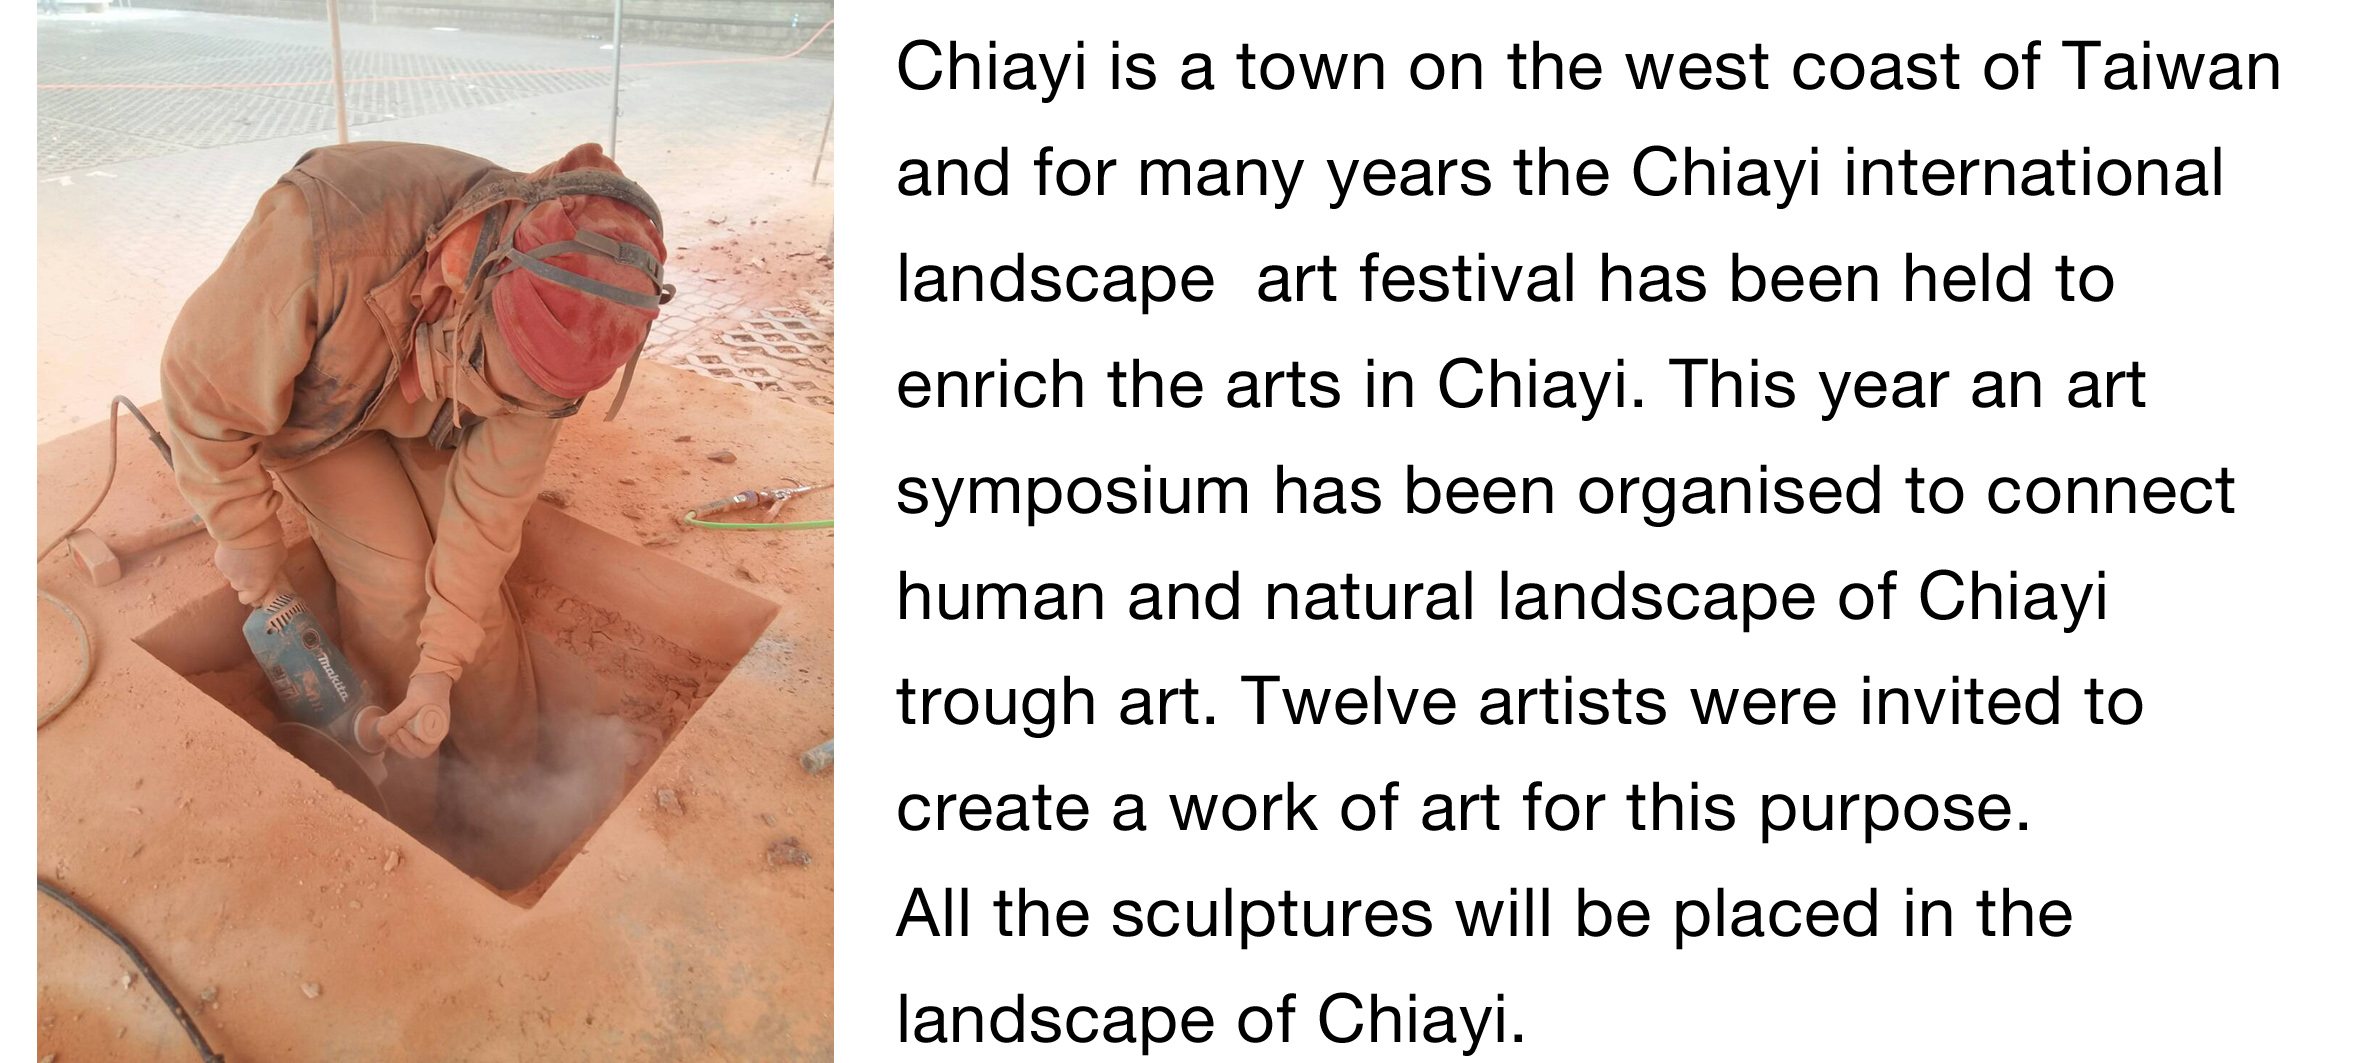 art-symposium-chiayi